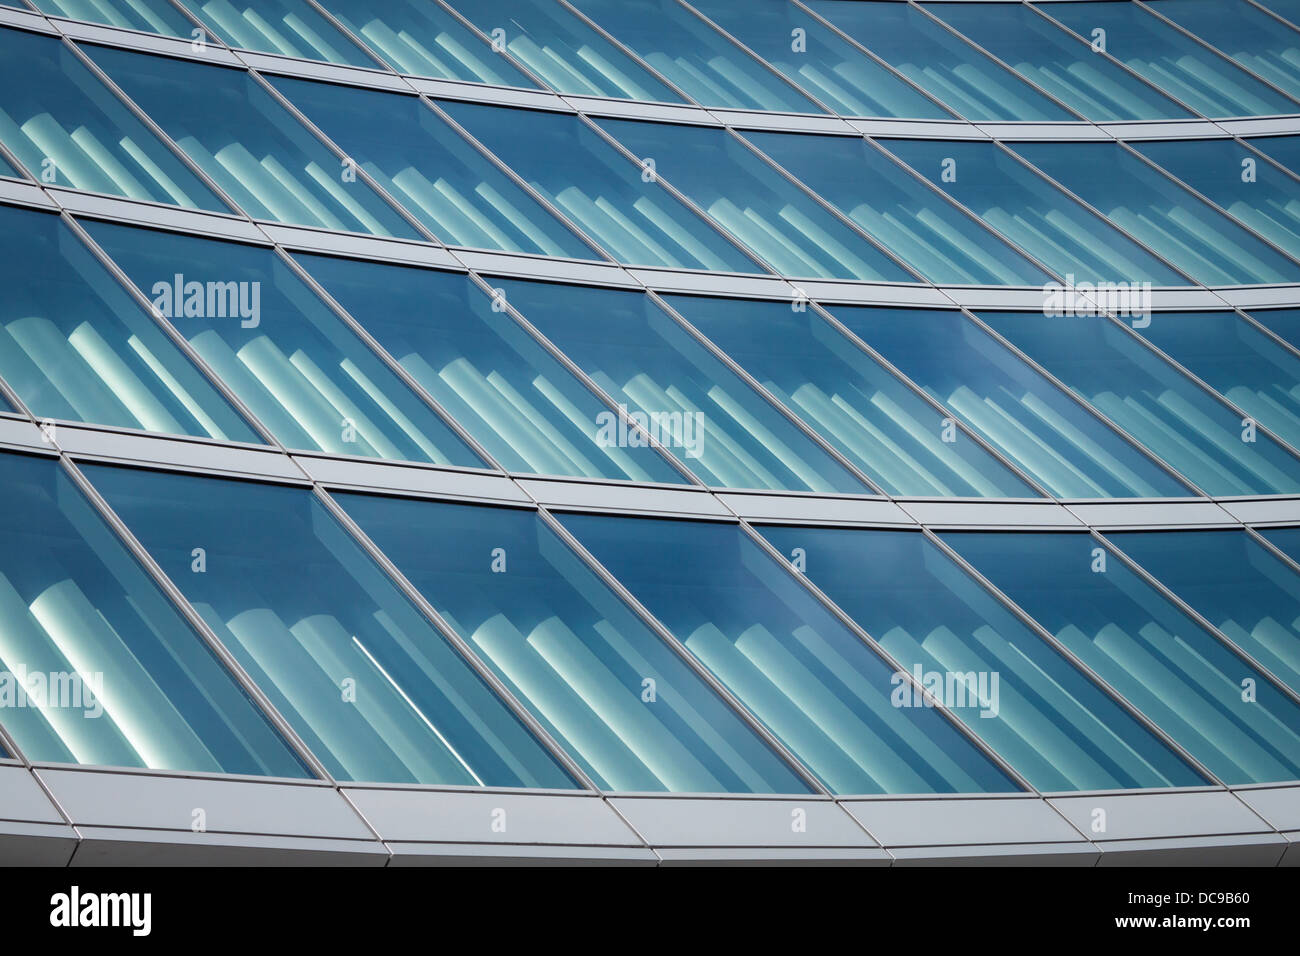 Des détails architecturaux d'un bâtiment moderne de verre et d'acier Banque D'Images